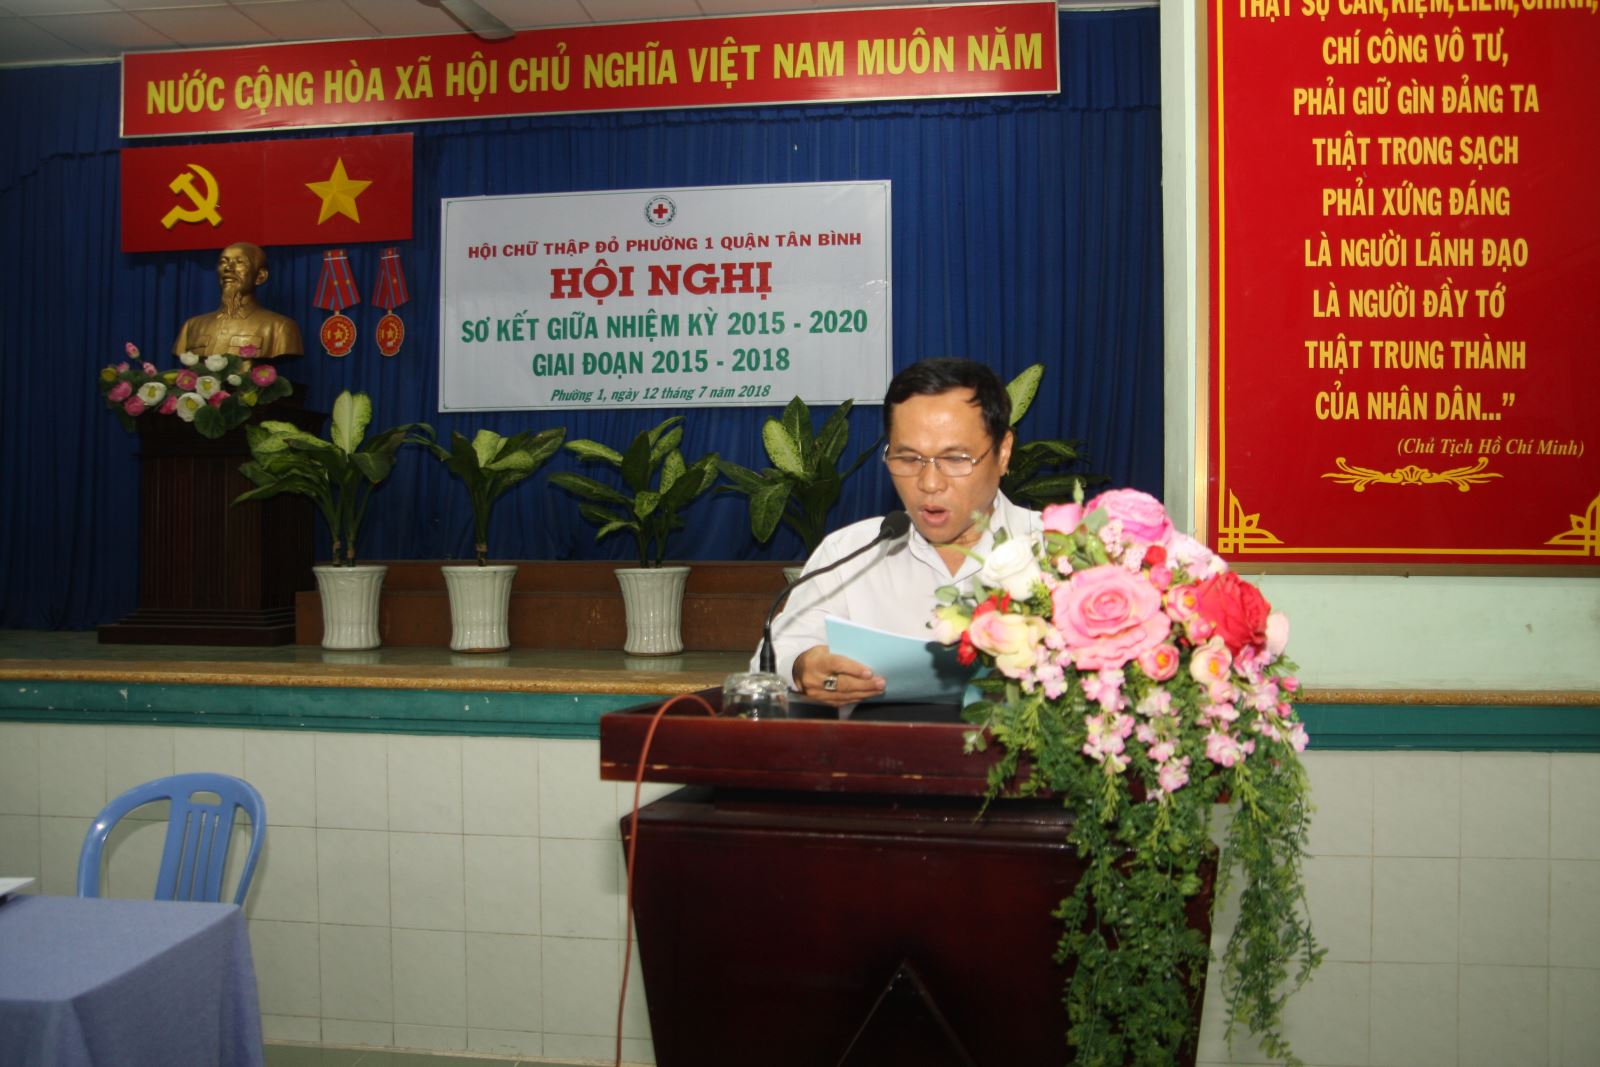 Ông Nguyễn Đạt Nghiệp, Chủ tịch Hội chữ thập đỏ phường 1 báo cáo trước Hội nghị